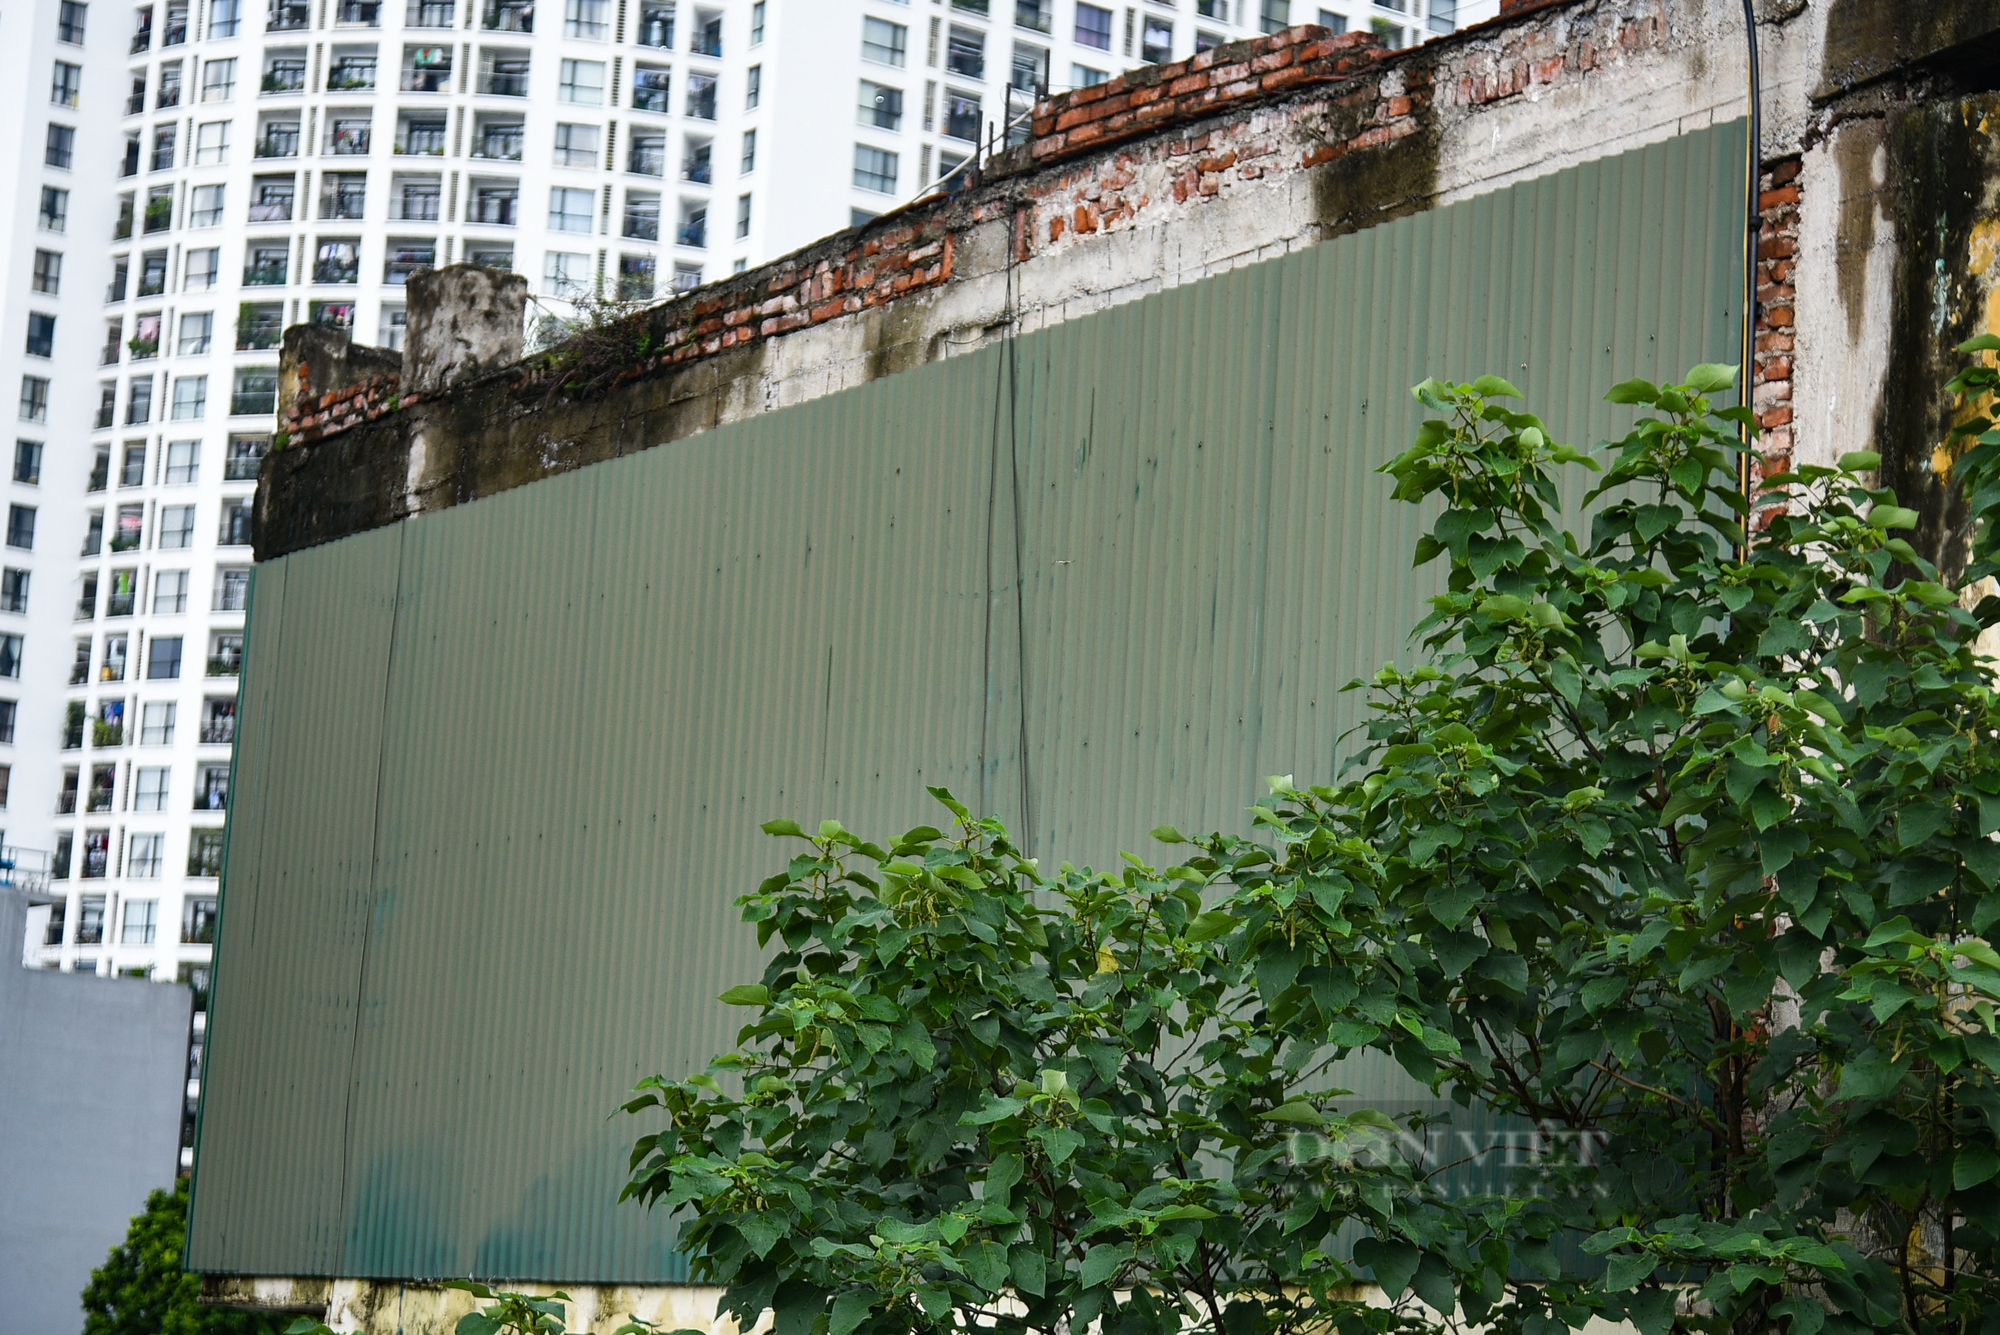 Hình ảnh hoang tàn, xuống cấp nghiêm trọng của dự án nằm ở khu đắc địa bậc nhất quận Thanh Xuân  - Ảnh 5.